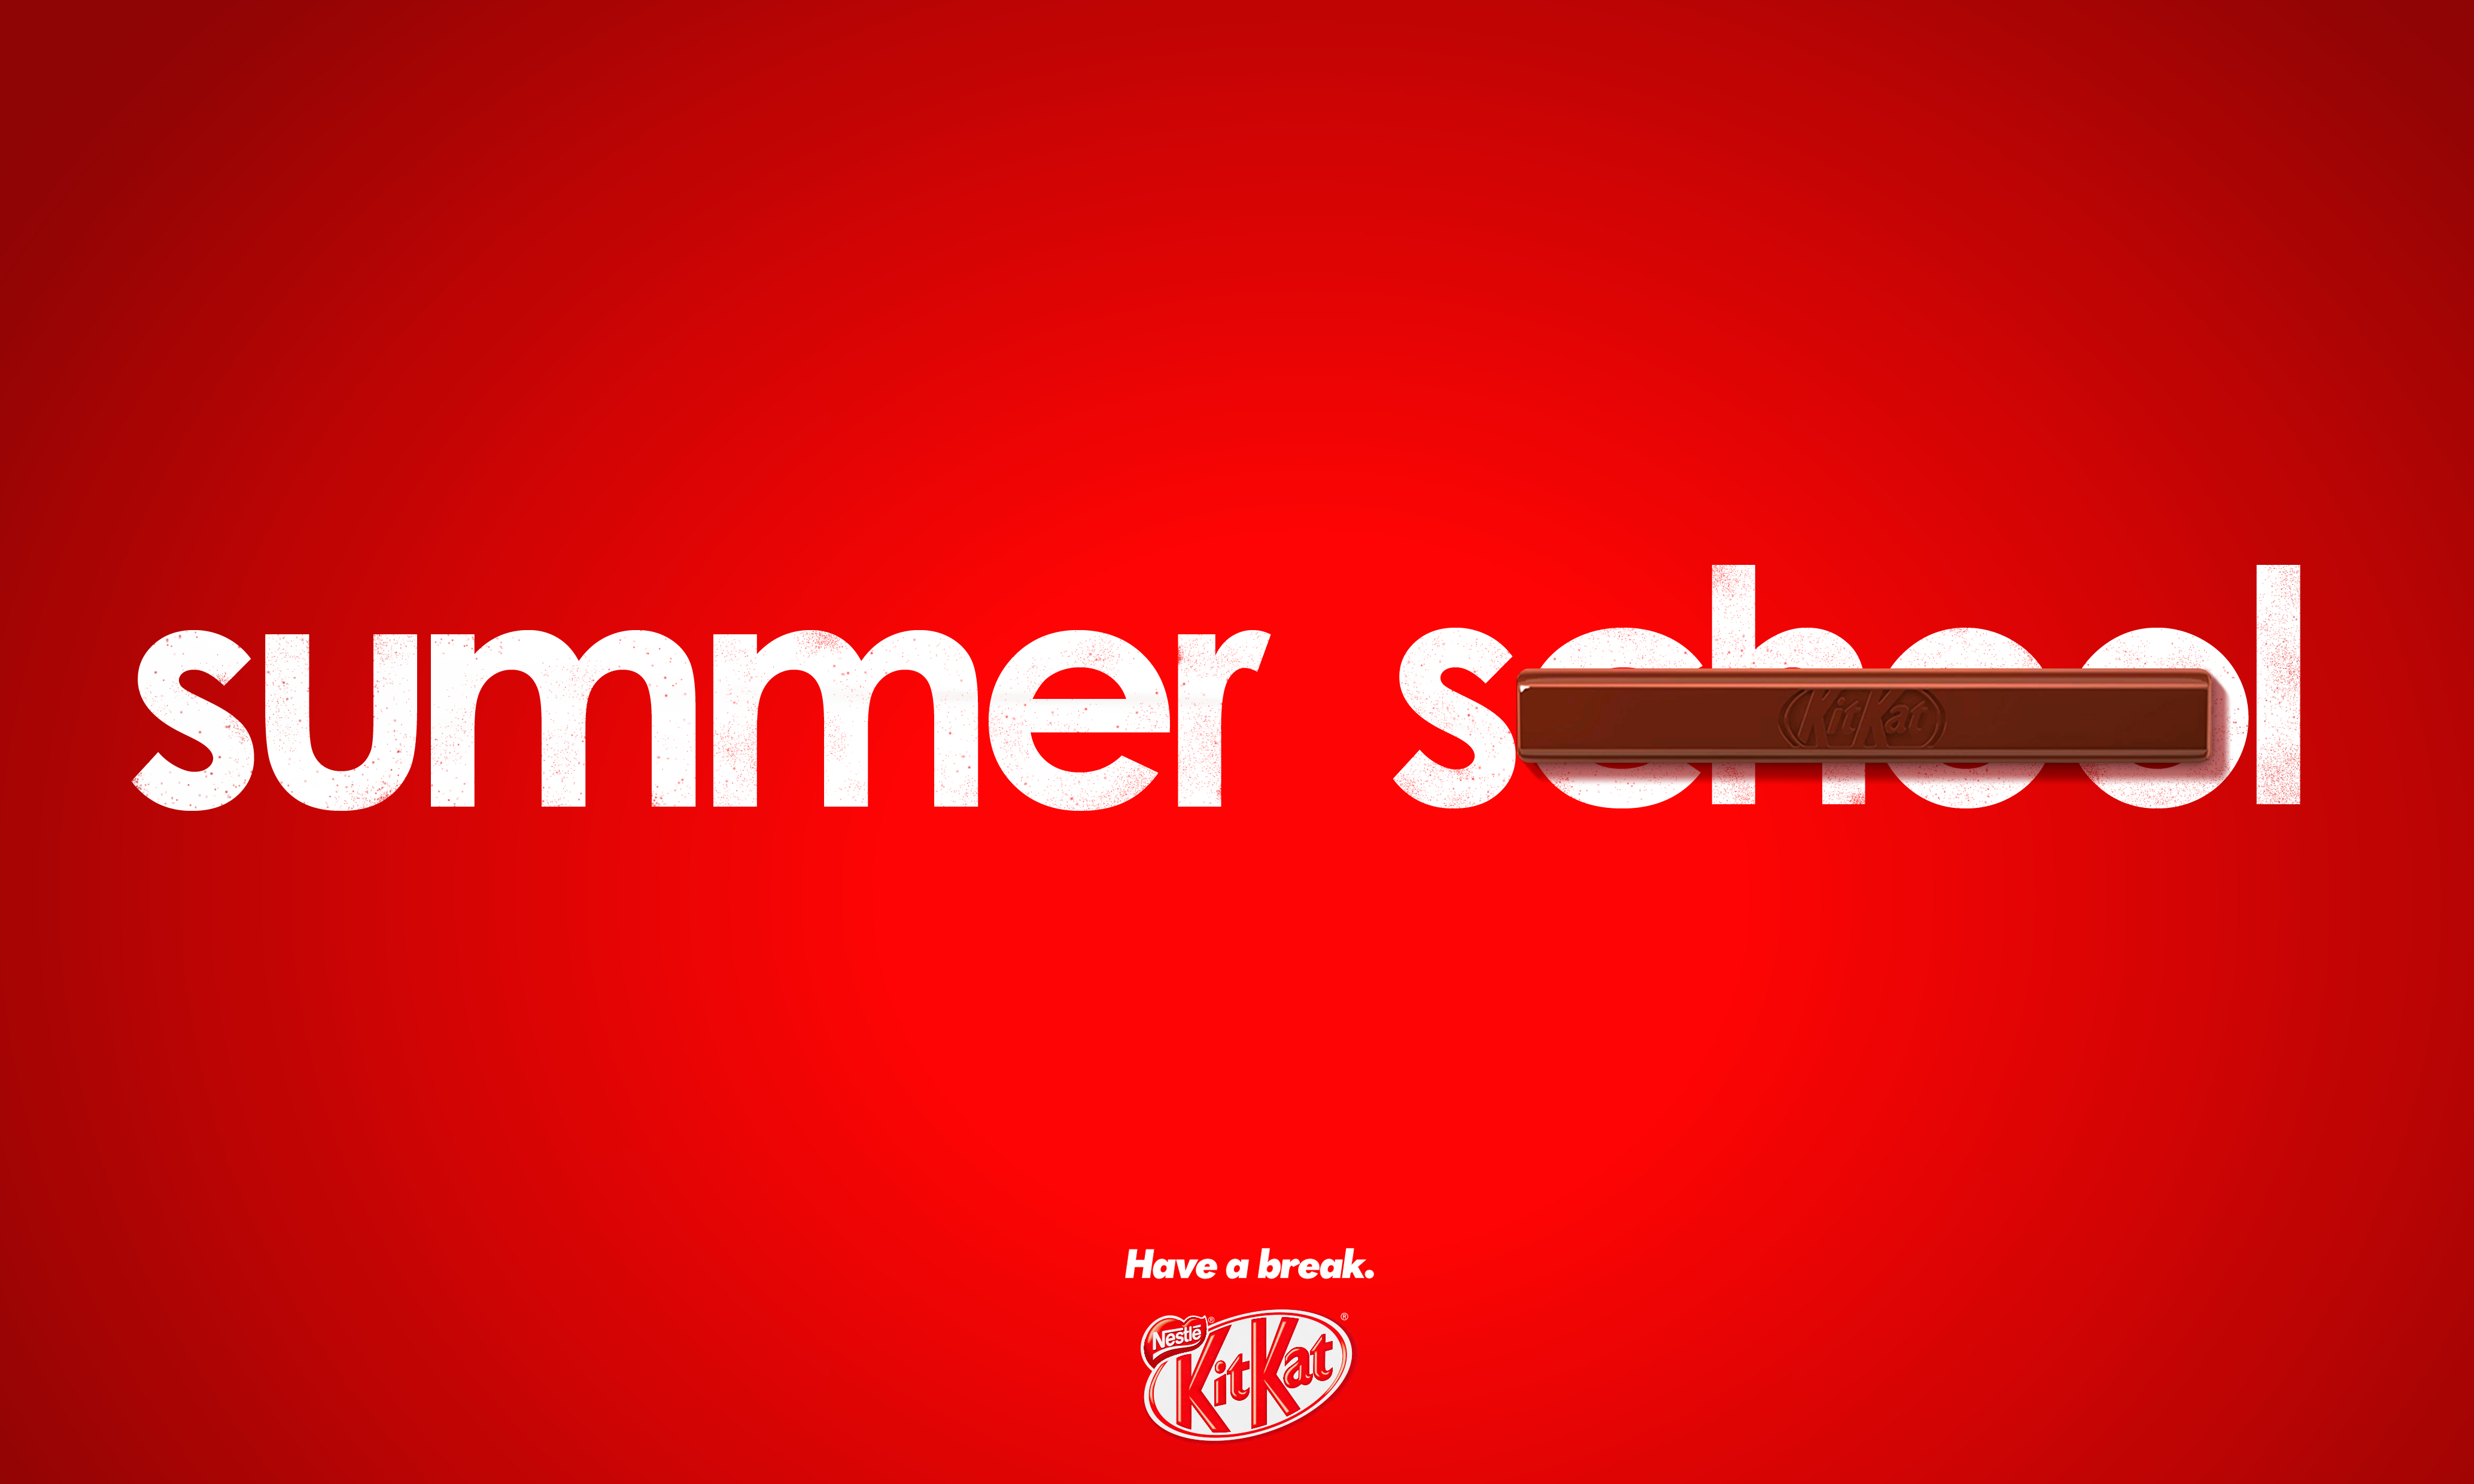 affiche publicitaire KitKat texte sur fond rouge + friandise